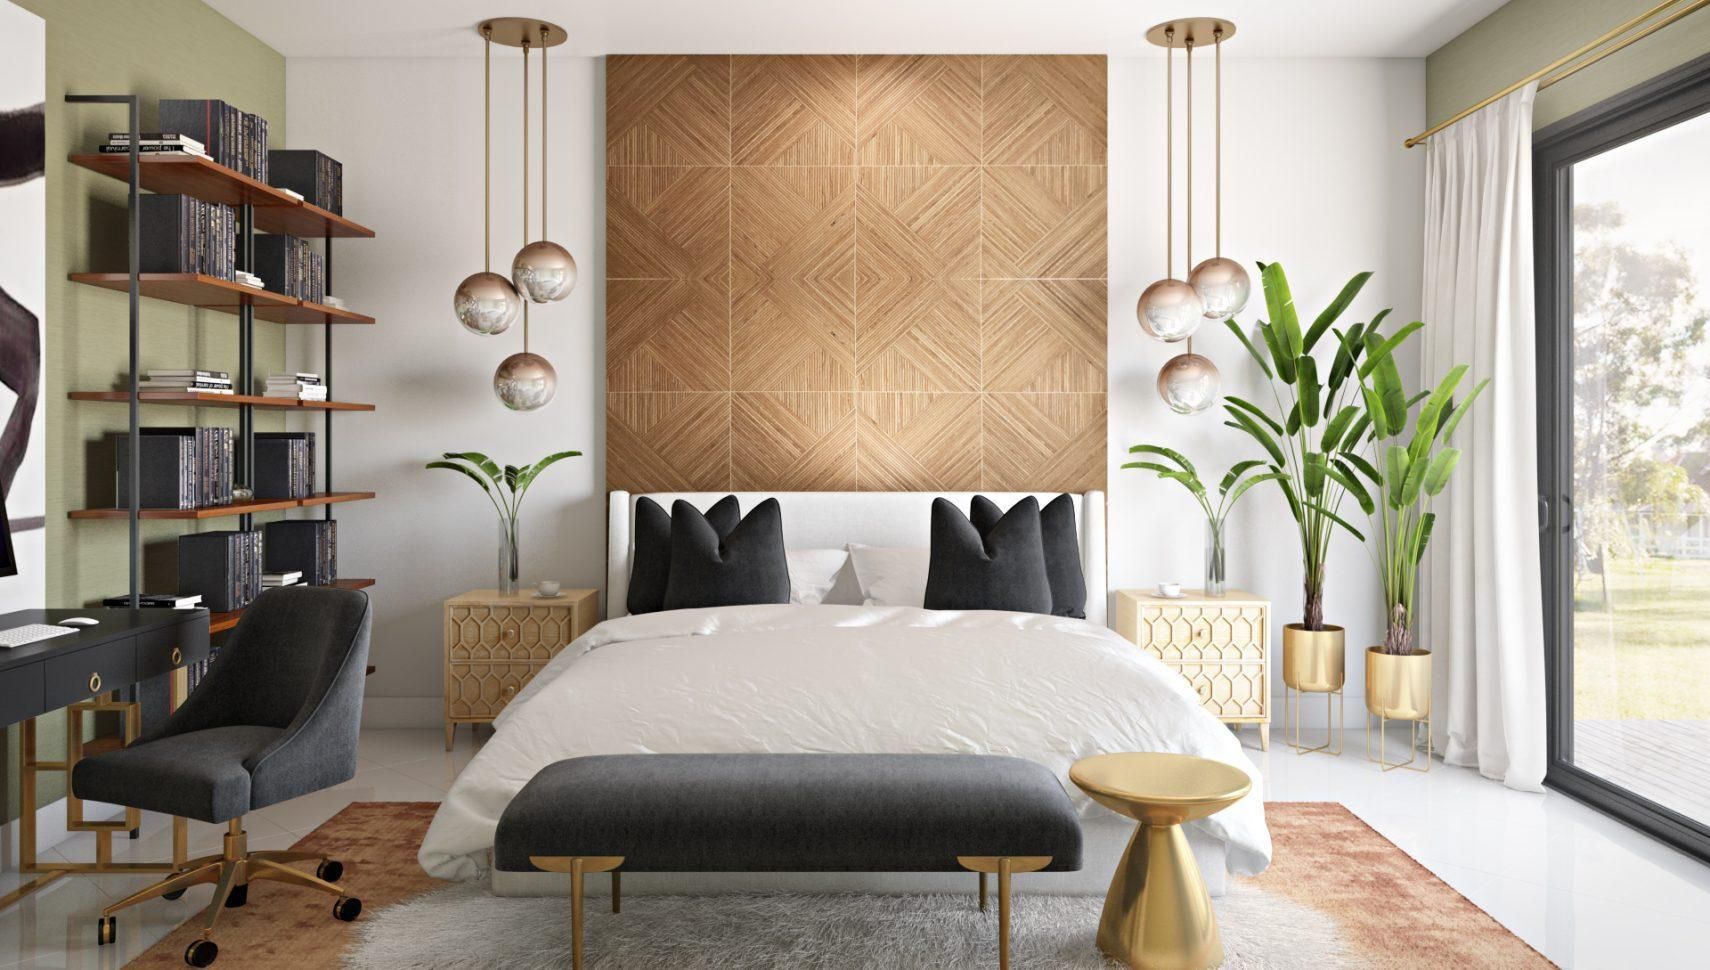 Contemporary interior design ideas for Singapore apartments